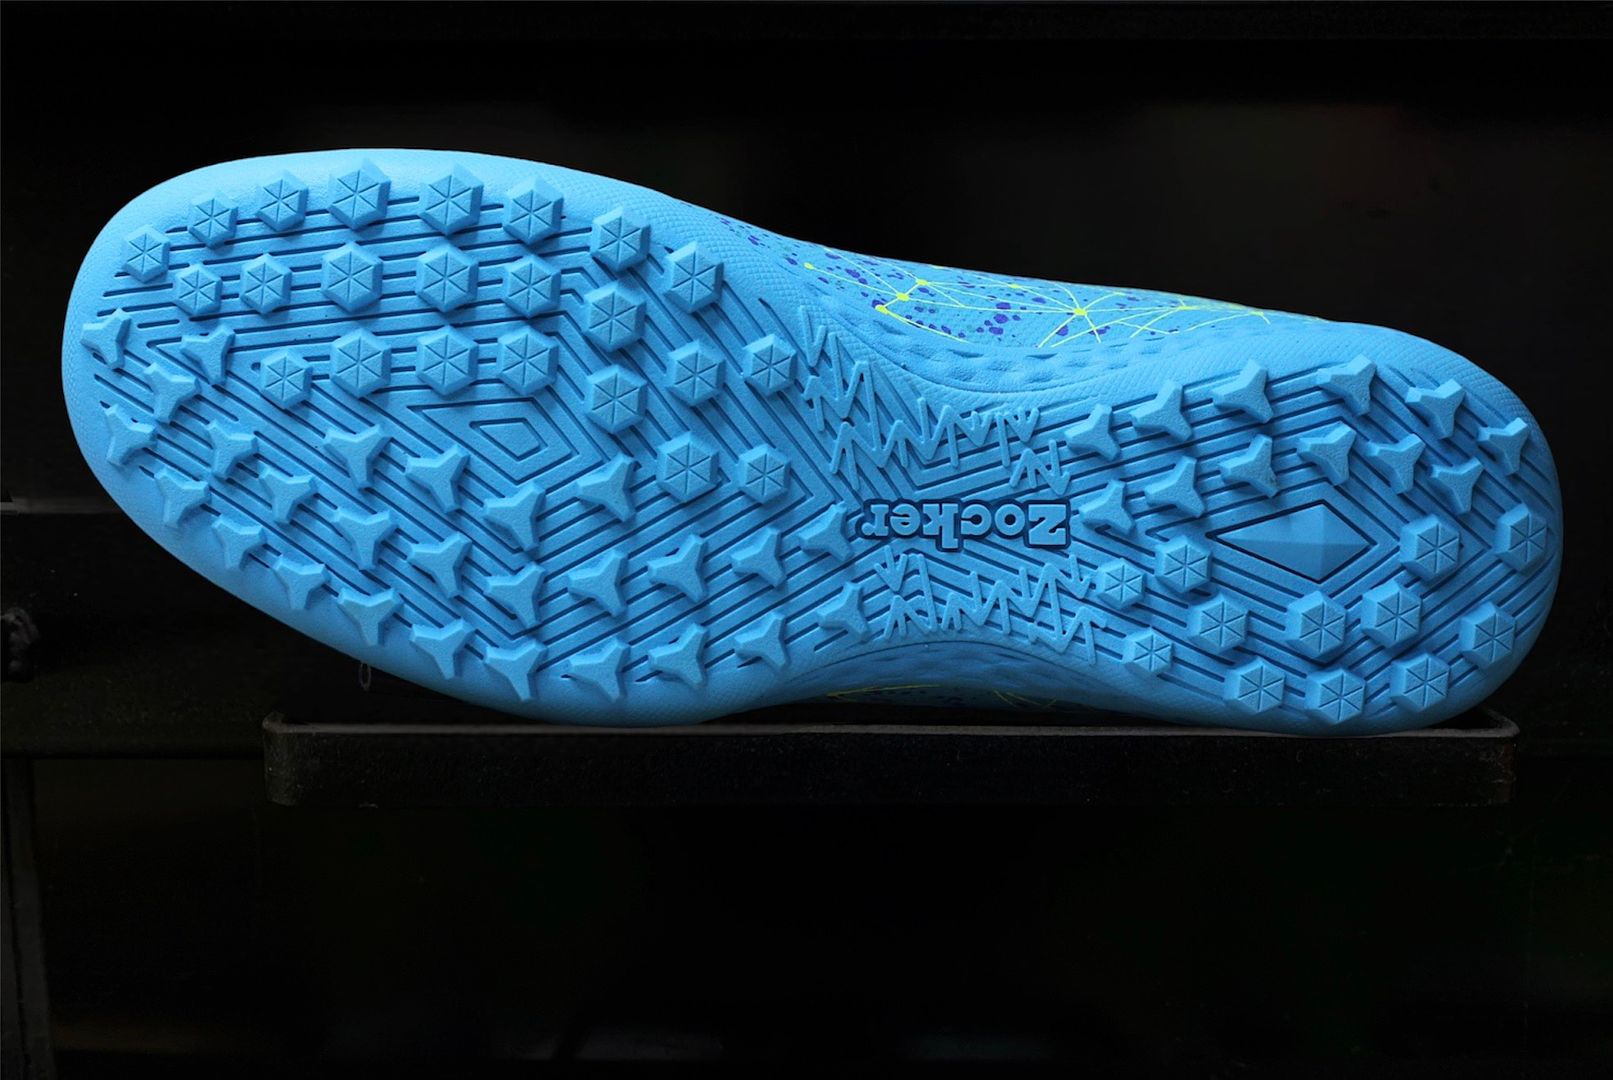 Giày bóng đá Zocker Inspire Pro TF màu xanh ngọc 